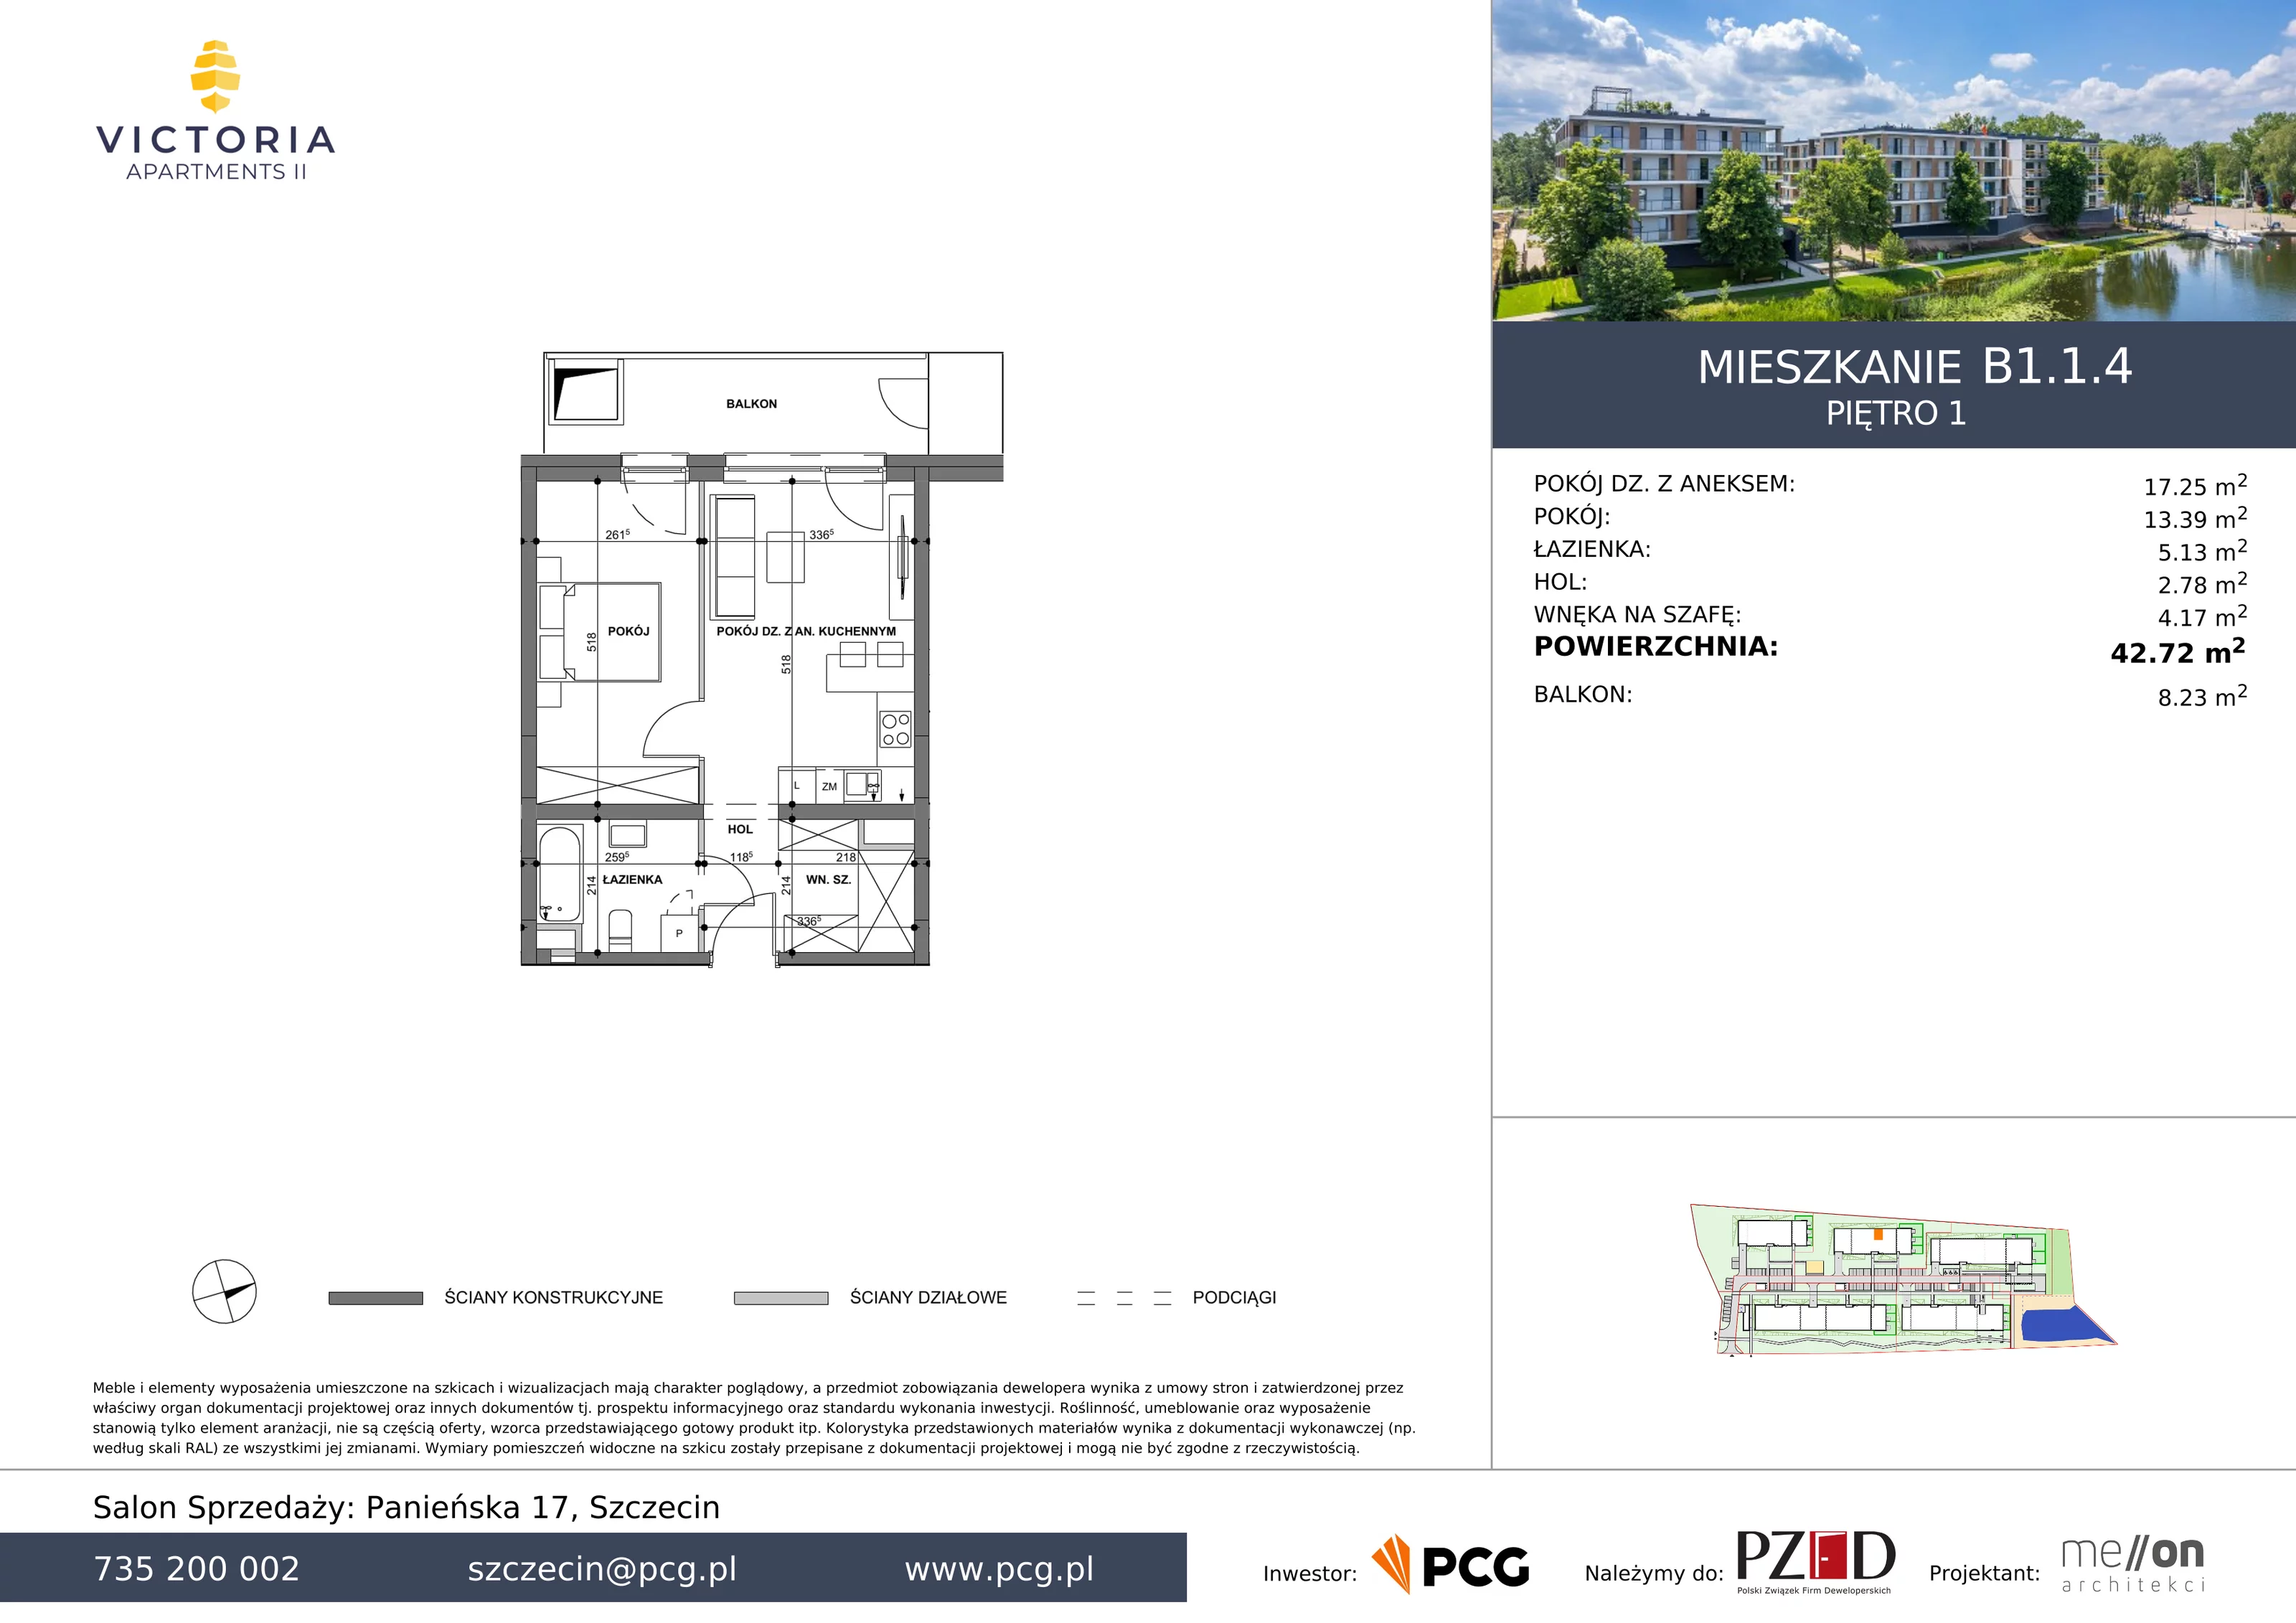 Apartament 42,72 m², piętro 1, oferta nr B1.1.4, Victoria Apartments II, Szczecin, Prawobrzeże, Dąbie, ul. Przestrzenna